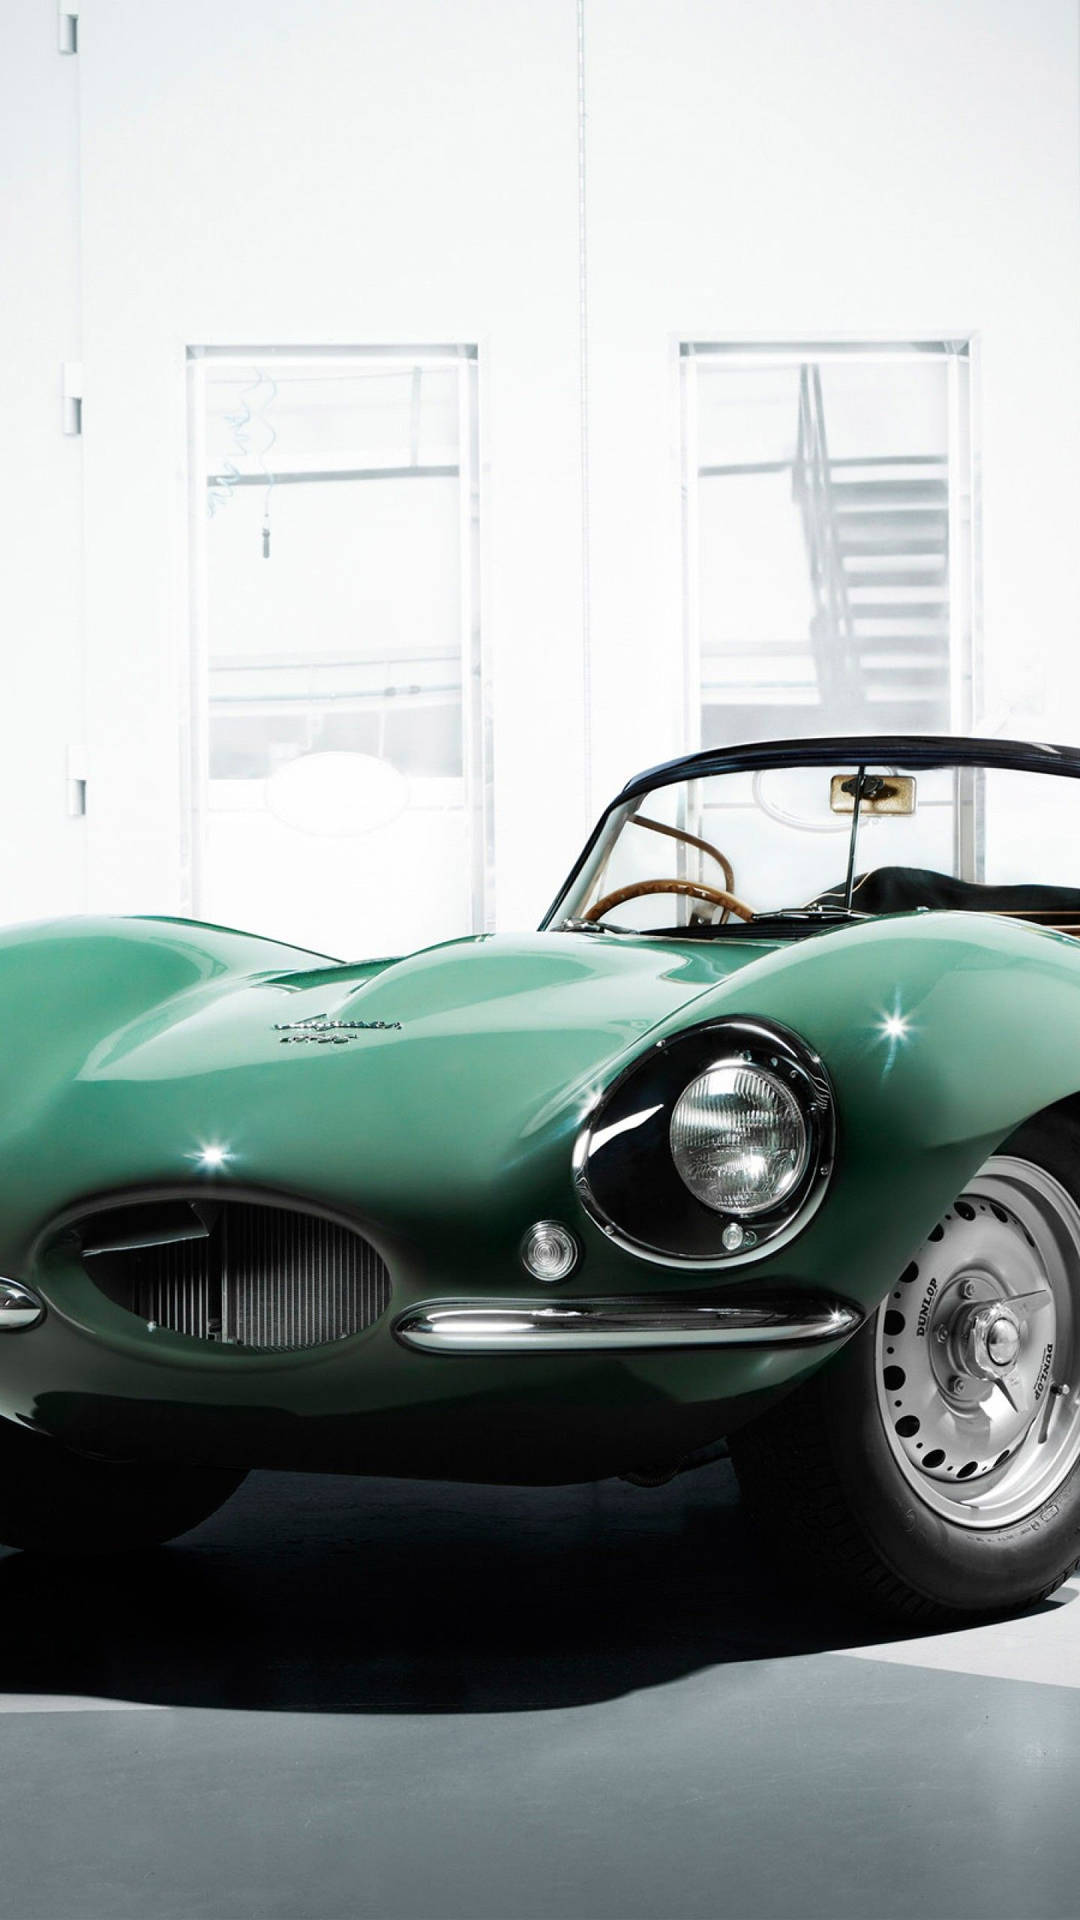 Green Vintage Jaguar Car Background